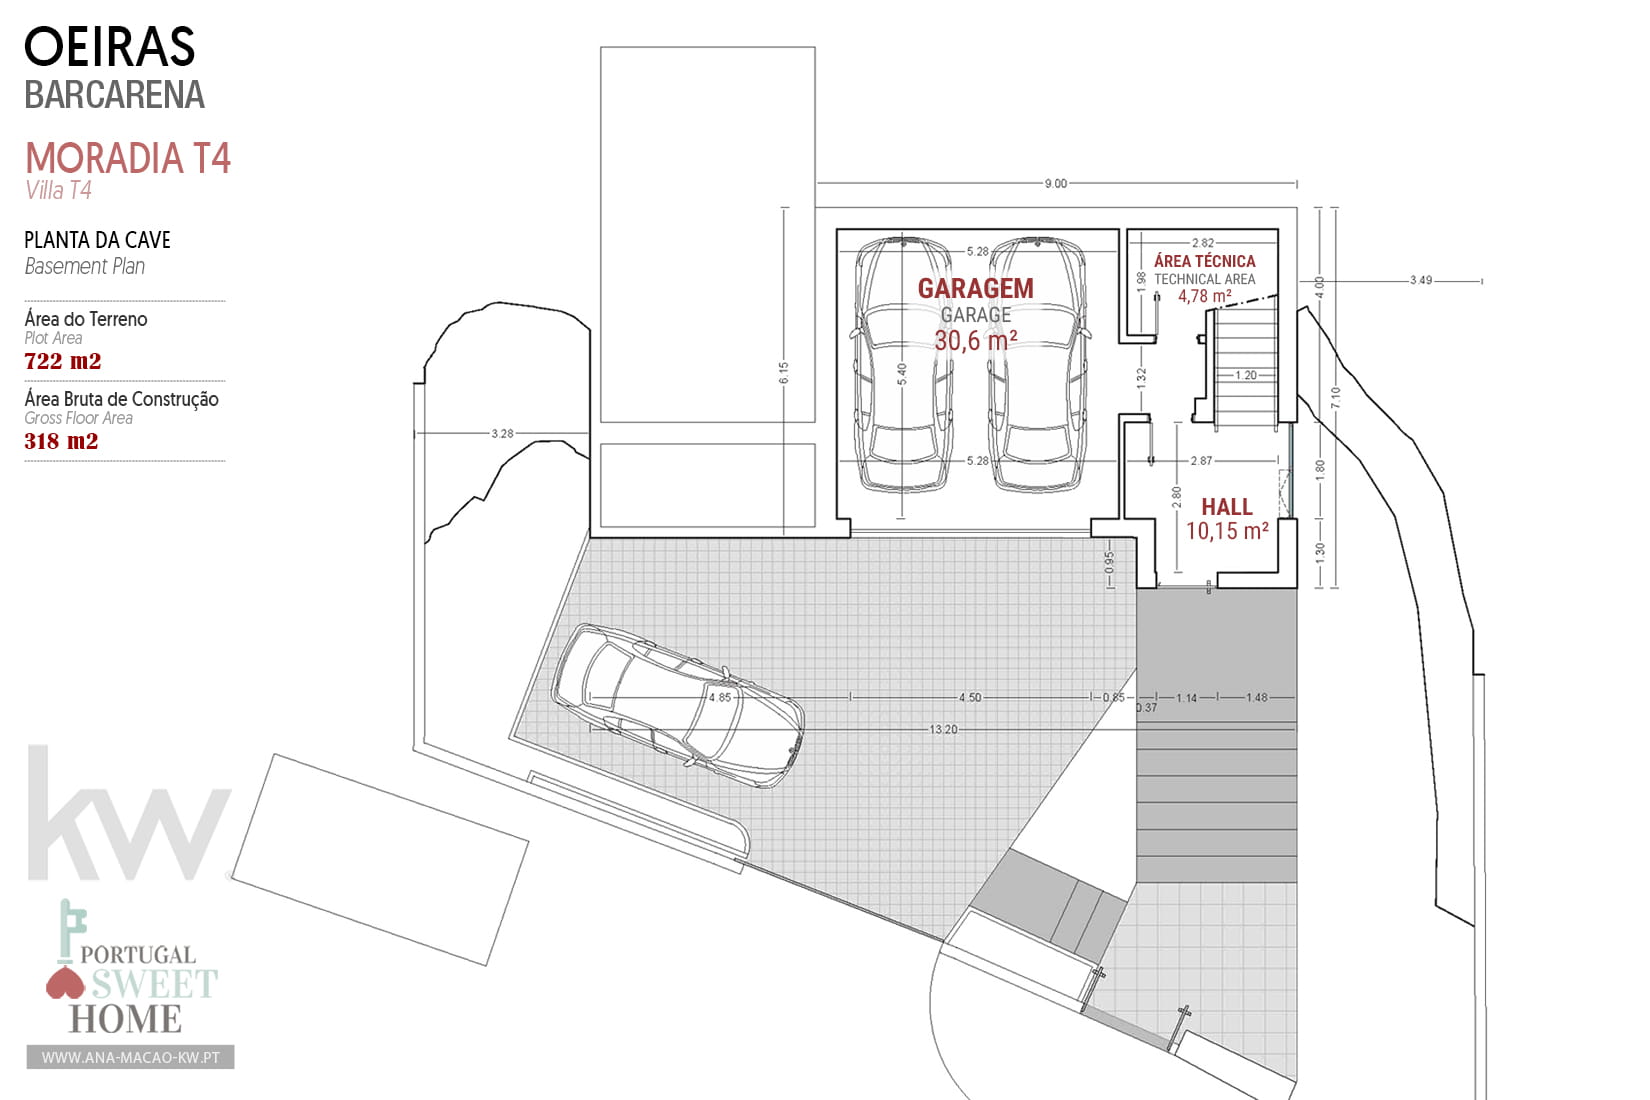 Plan de garage au rez-de-chaussée du projet